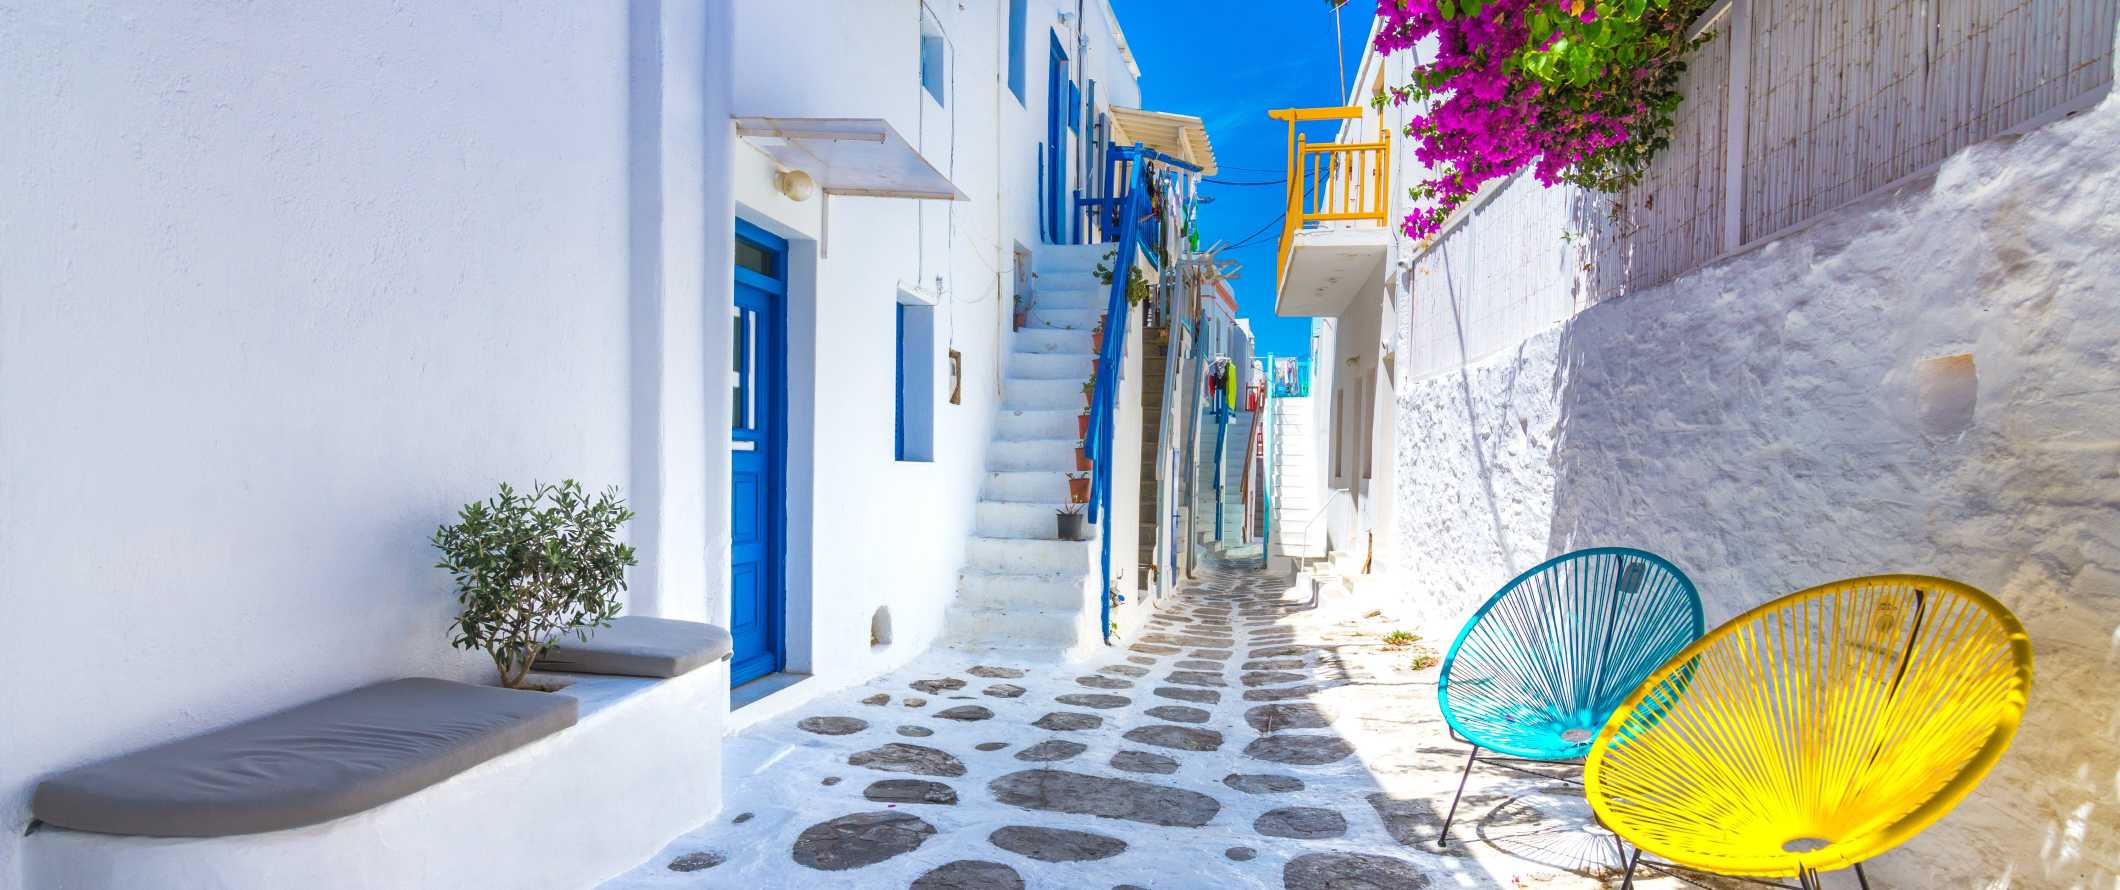 Rua na cidade velha de Mykonos com edifícios brancos como a neve com portas e janelas azuis na ilha de Mykonos, na Grécia.